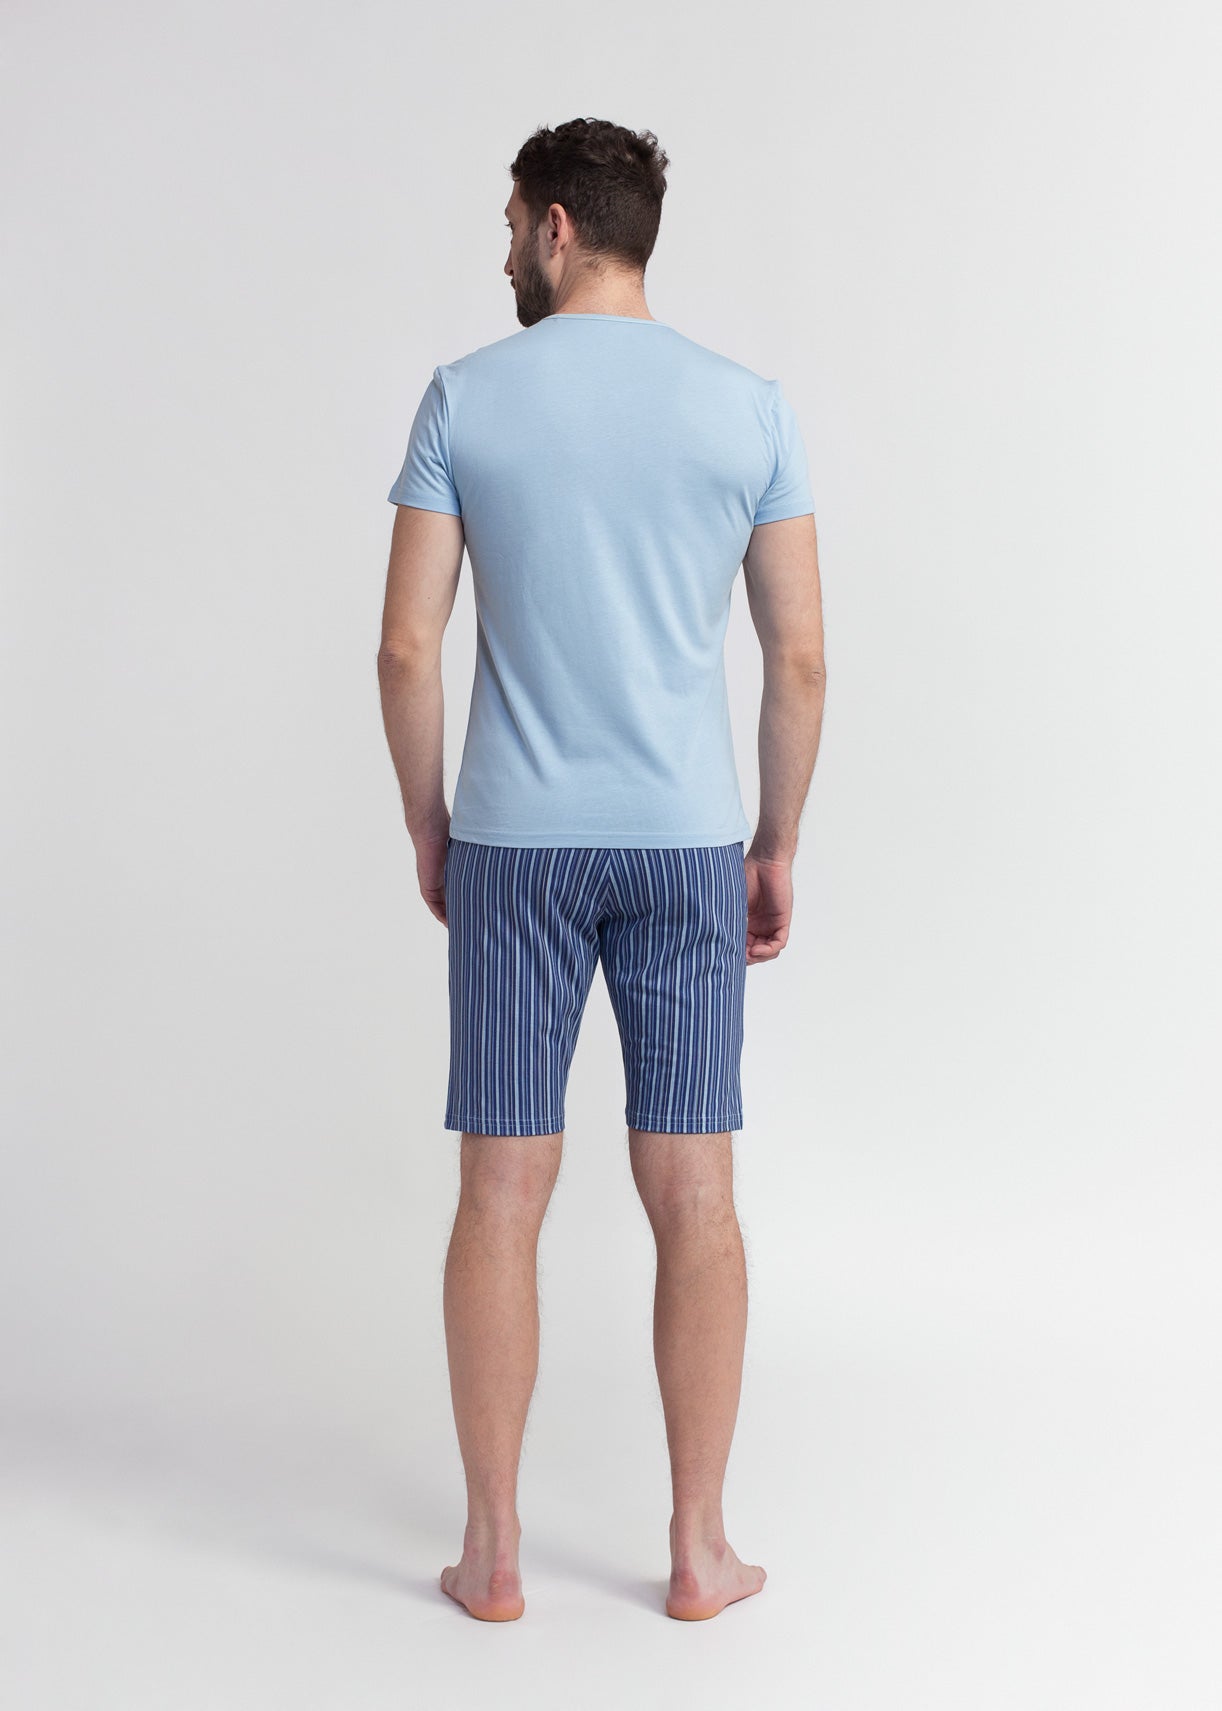 Pijama Bărbați Urban Stripes Modal